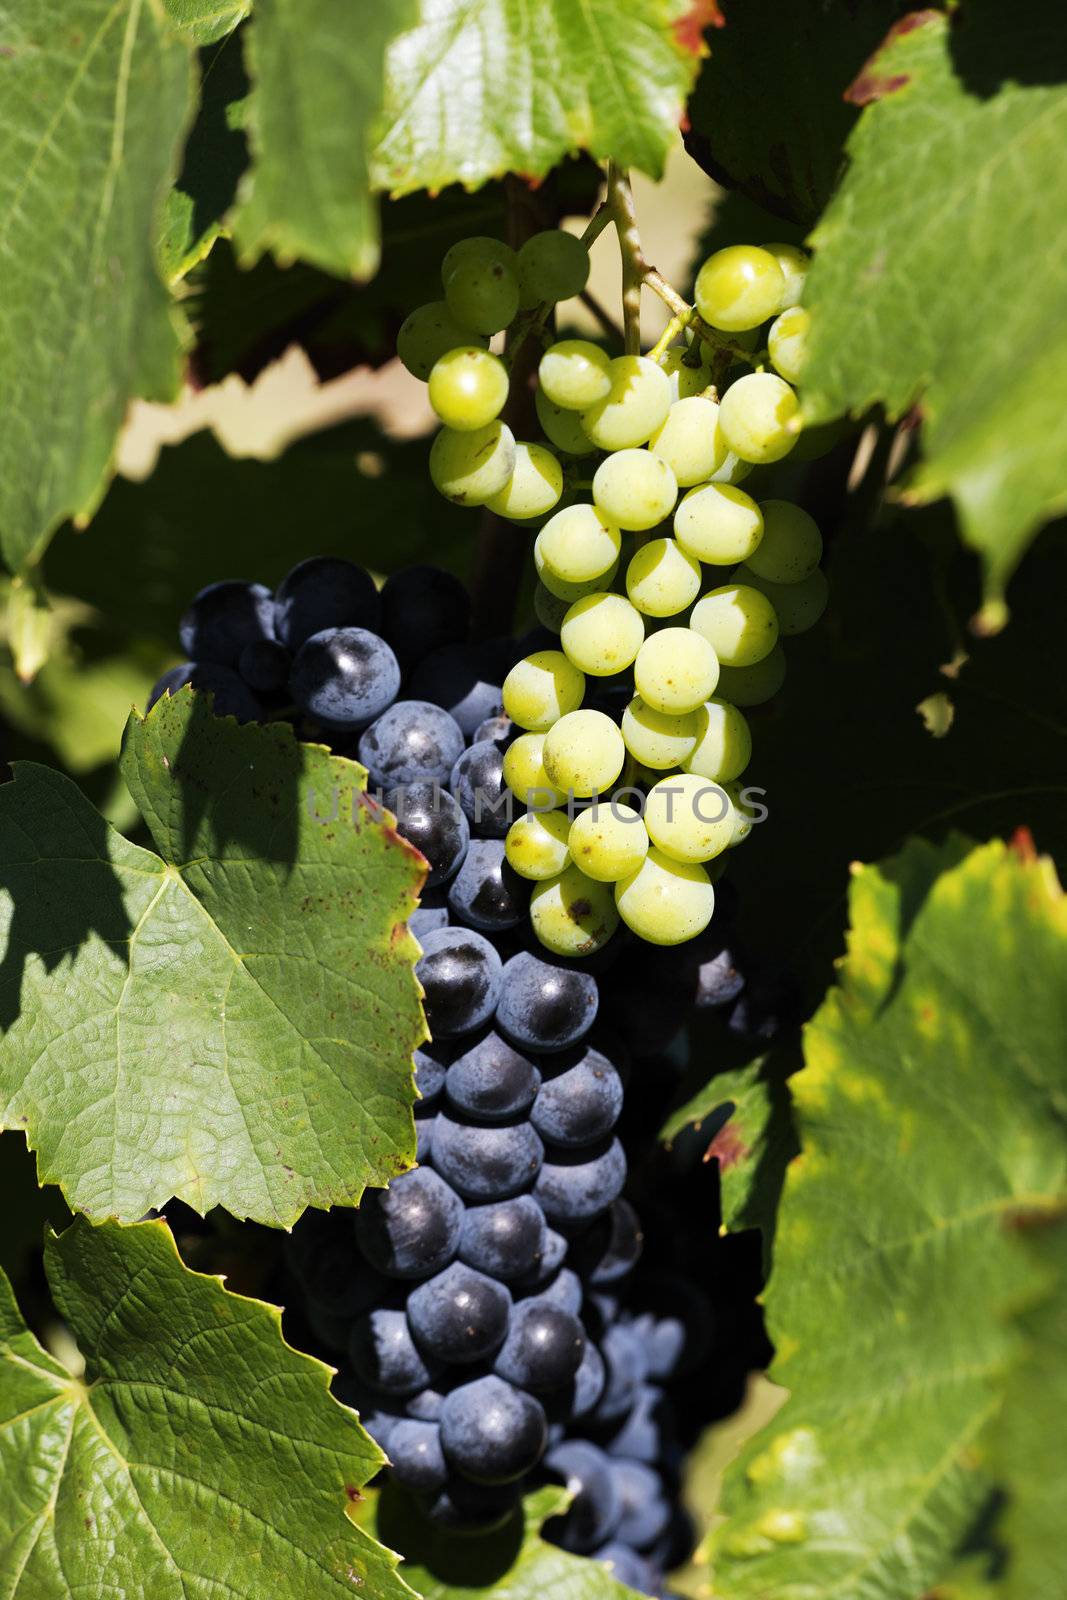 grape-vine wait the harvesting in France in summer